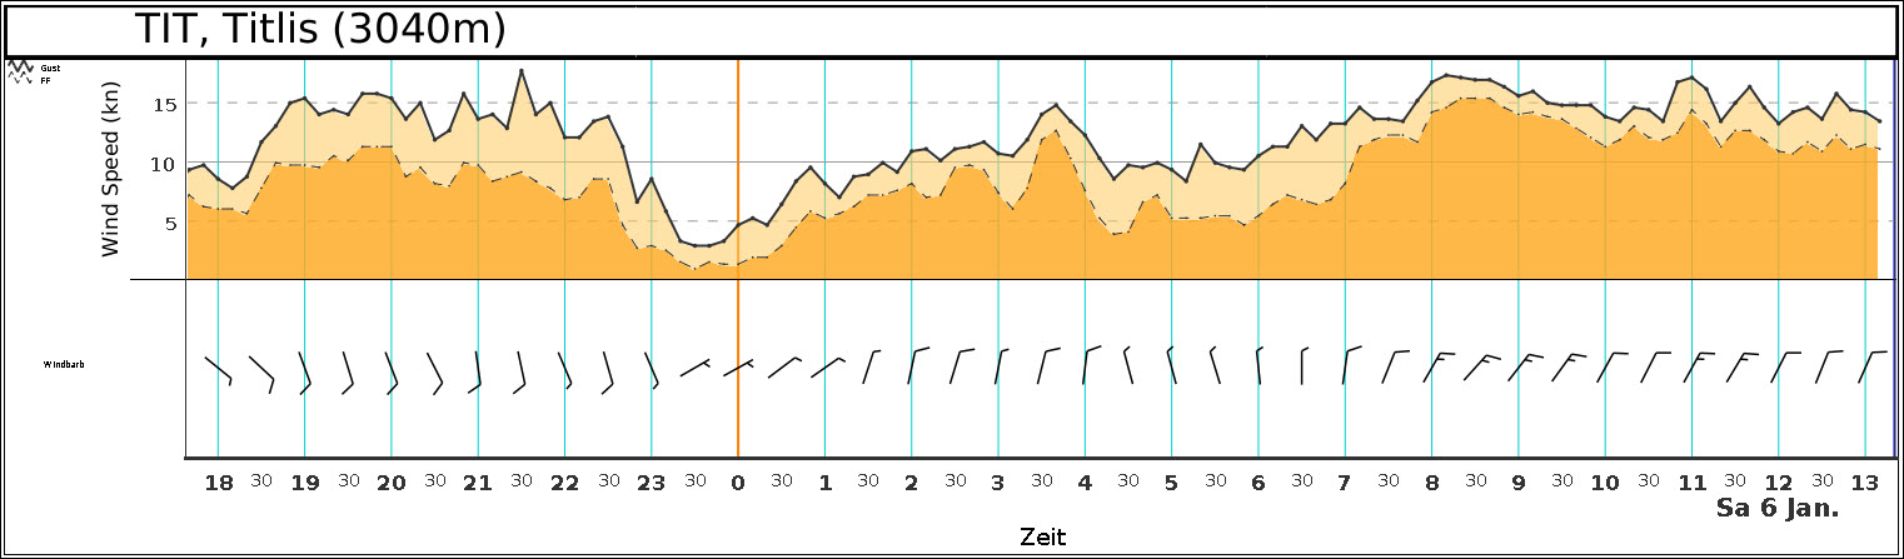 Windverlauf auf dem Titlis von gestern Abend bis heute Nachmittag. Die schwarzen Linien, unter welchen orange aufgefüllt ist, stellen den mittleren Wind (gestrichelt) und die Böen (durchgezogen) in Knoten dar. Darunter zeigen die Windfiedern die Windrichtung. Der Wind hat von Südsüdost nach Mitternacht auf nördliche Richtung gedreht und im Laufe des heutigen Vormittags hat sich Nordostwind eingestellt. (Quelle: MeteoSchweiz)